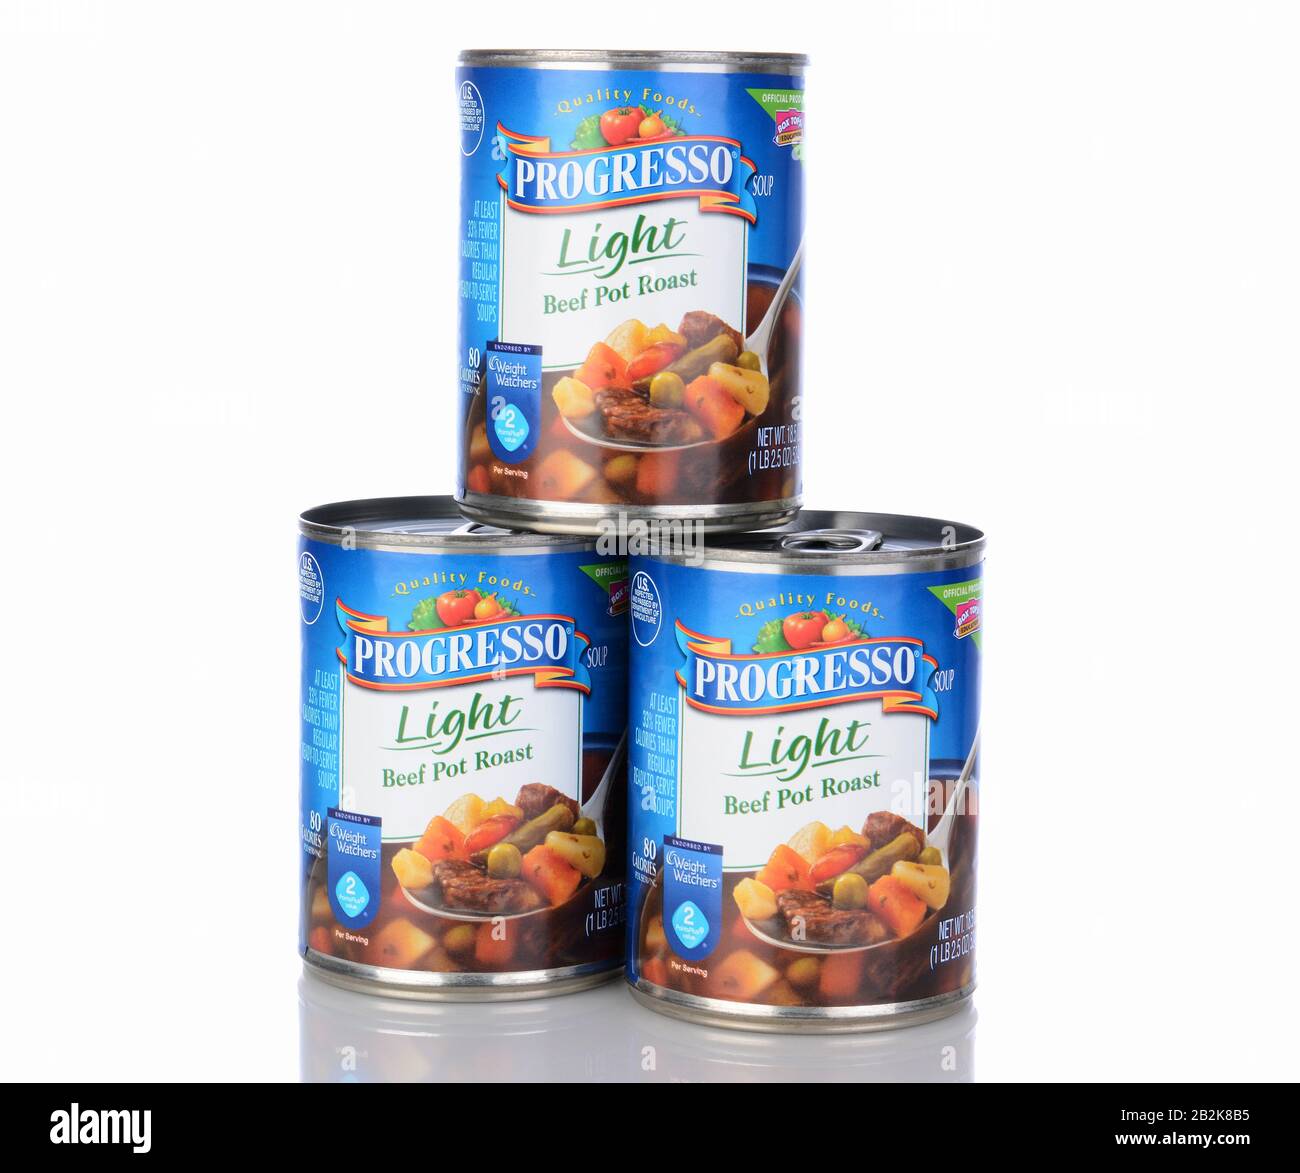 Irvine, CA - 05. Januar 2014: Drei Dosen Progresso Light Beef Pot Roast Soup. Progresso, im Besitz von General Mills, hat seit über 90 Jahren Suppen gemacht Stockfoto